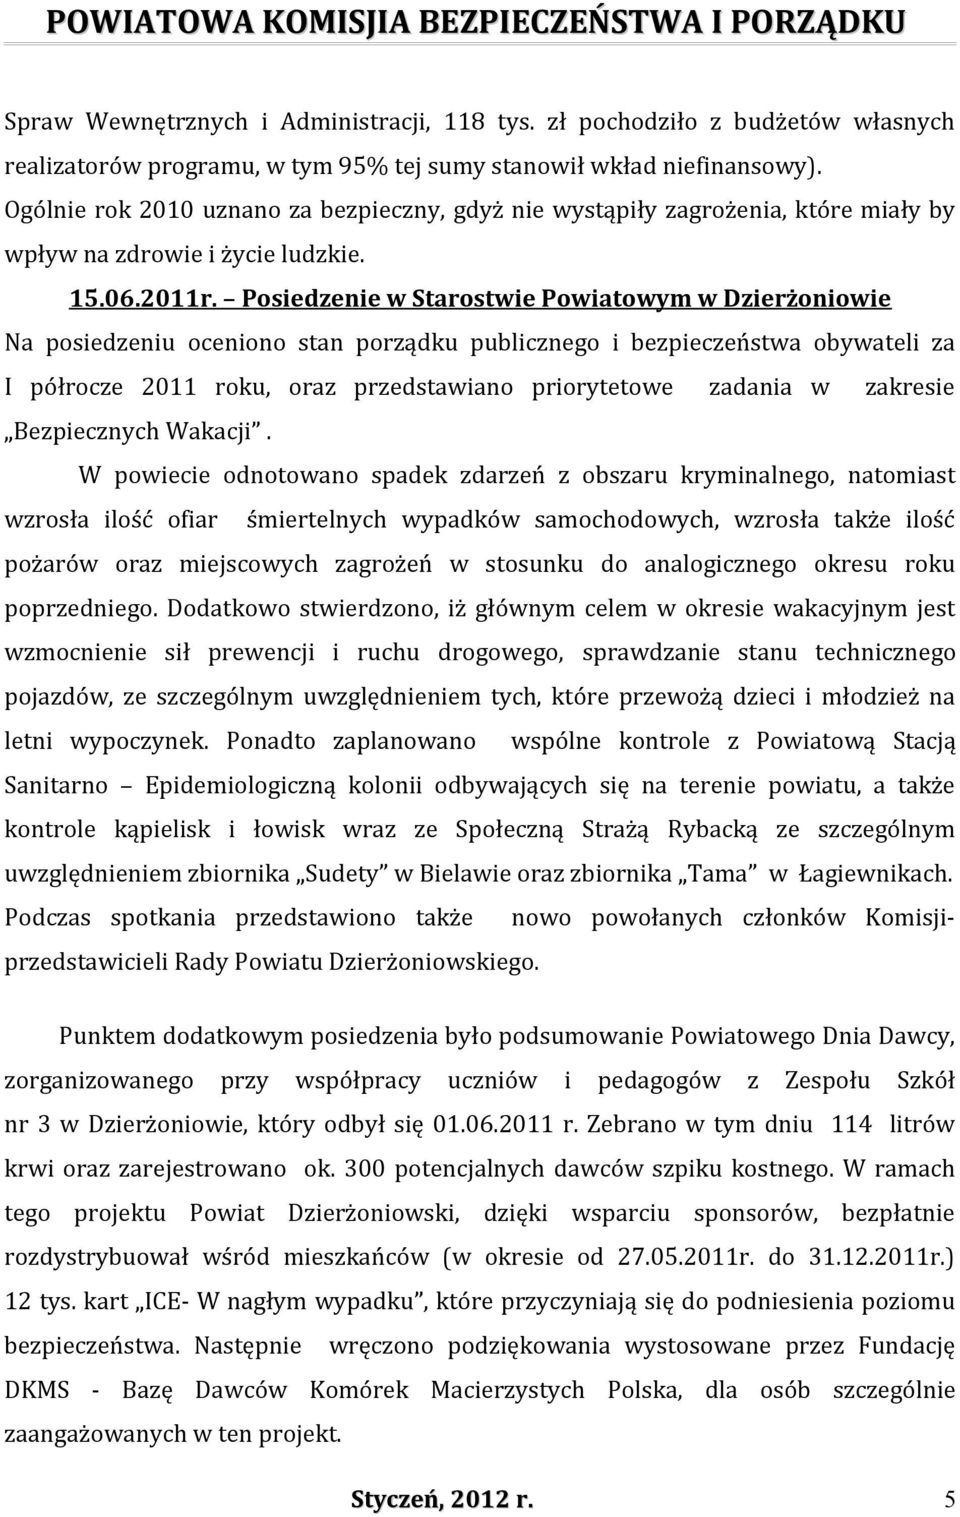 Posiedzenie w Starostwie Powiatowym w Dzierżoniowie Na posiedzeniu oceniono stan porządku publicznego i bezpieczeństwa obywateli za I półrocze 2011 roku, oraz przedstawiano priorytetowe zadania w